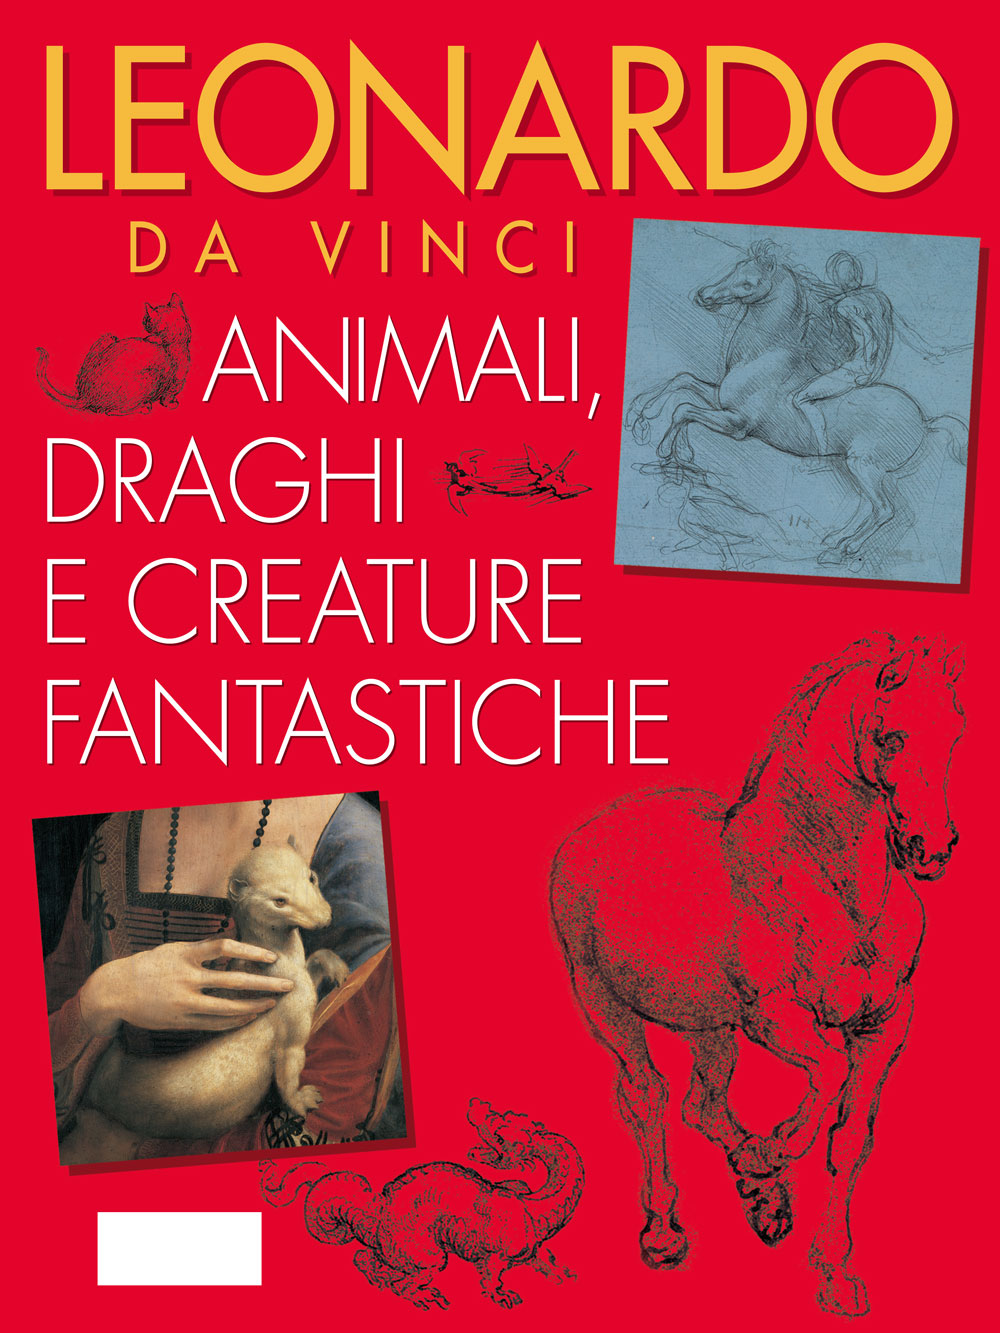 Leonardo da Vinci. Animali, draghi e creature fantastiche